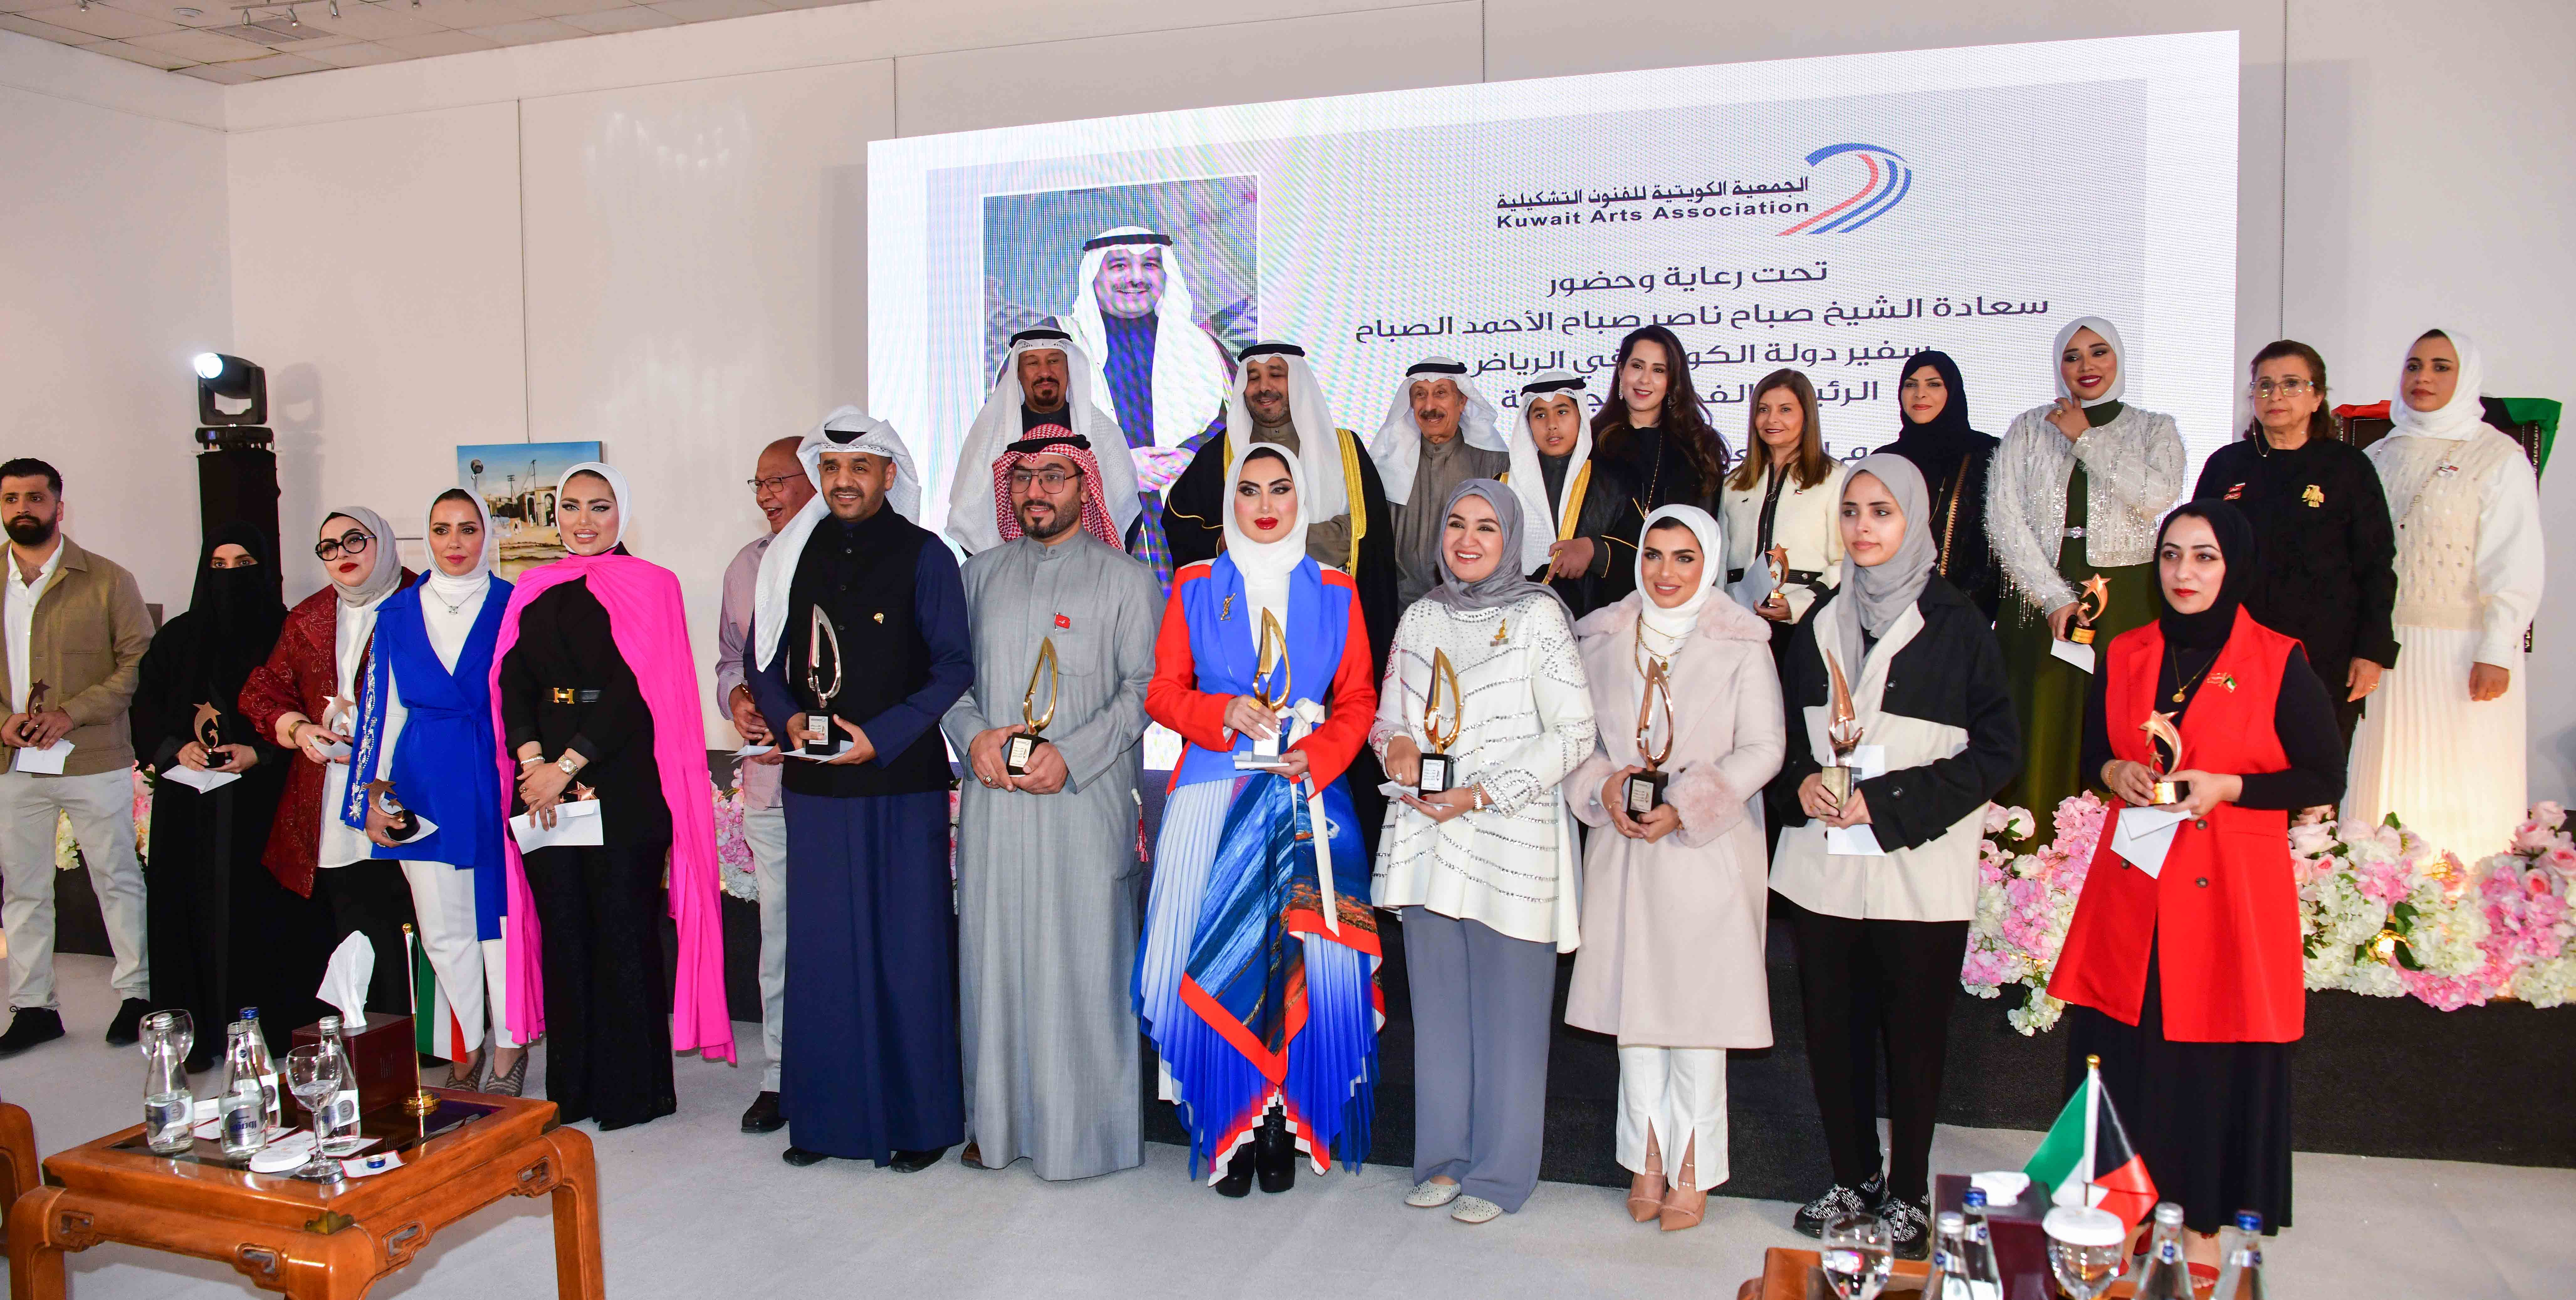 صورة جماعية للفائزين بمهرجان الكويت للإبداع التشكيلي في الجمعية الكويتية للفنون التشكيلية